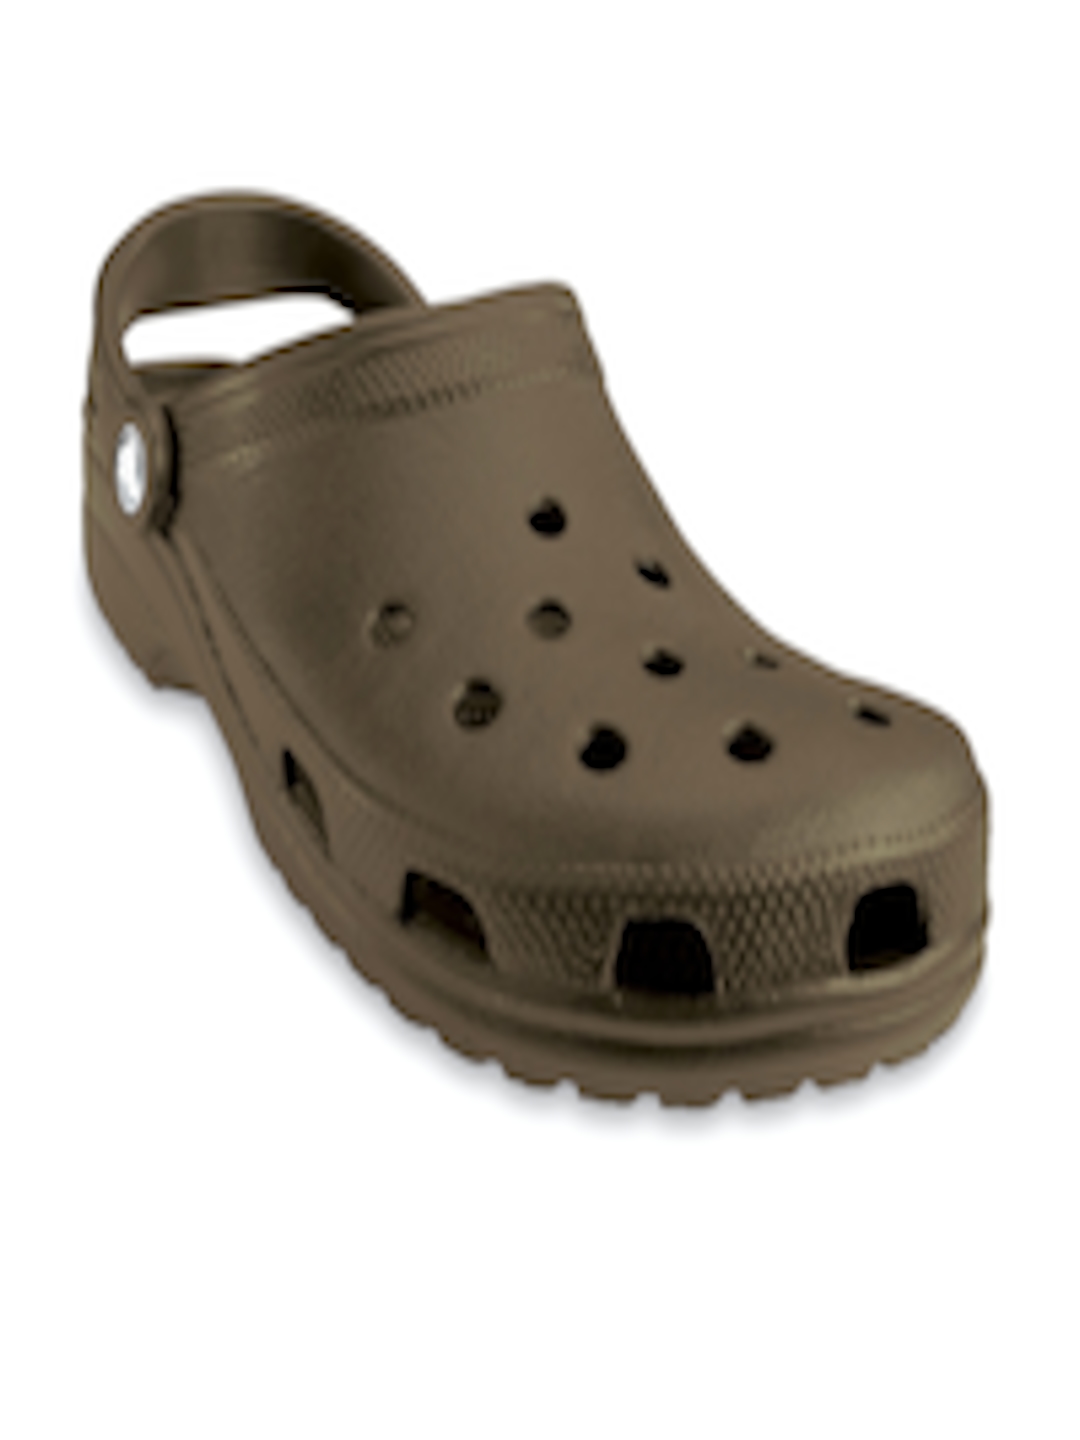 Buy Crocs Classic Men Brown Clogs - Flip Flops for Men 1383770 | Myntra